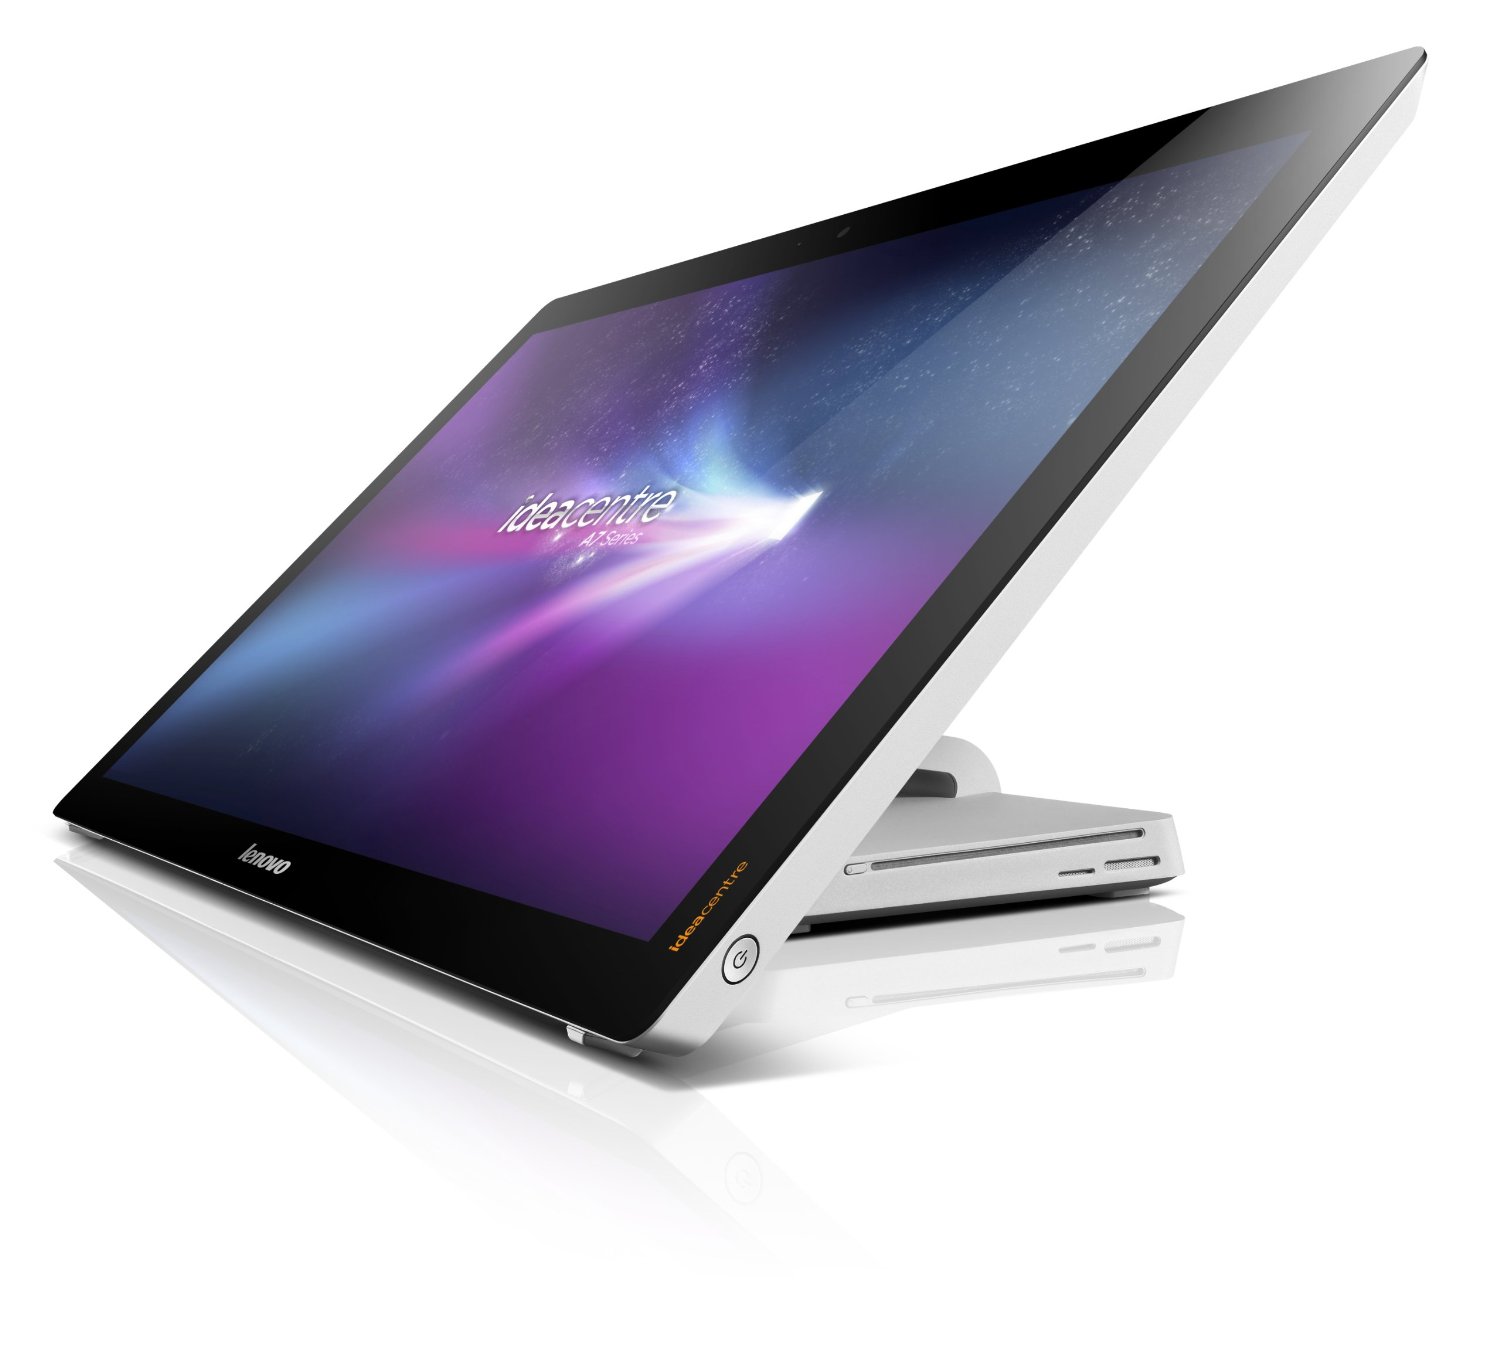 Купить Ноутбук Lenovo IdeaCentre A720 (57-317400) - ITMag